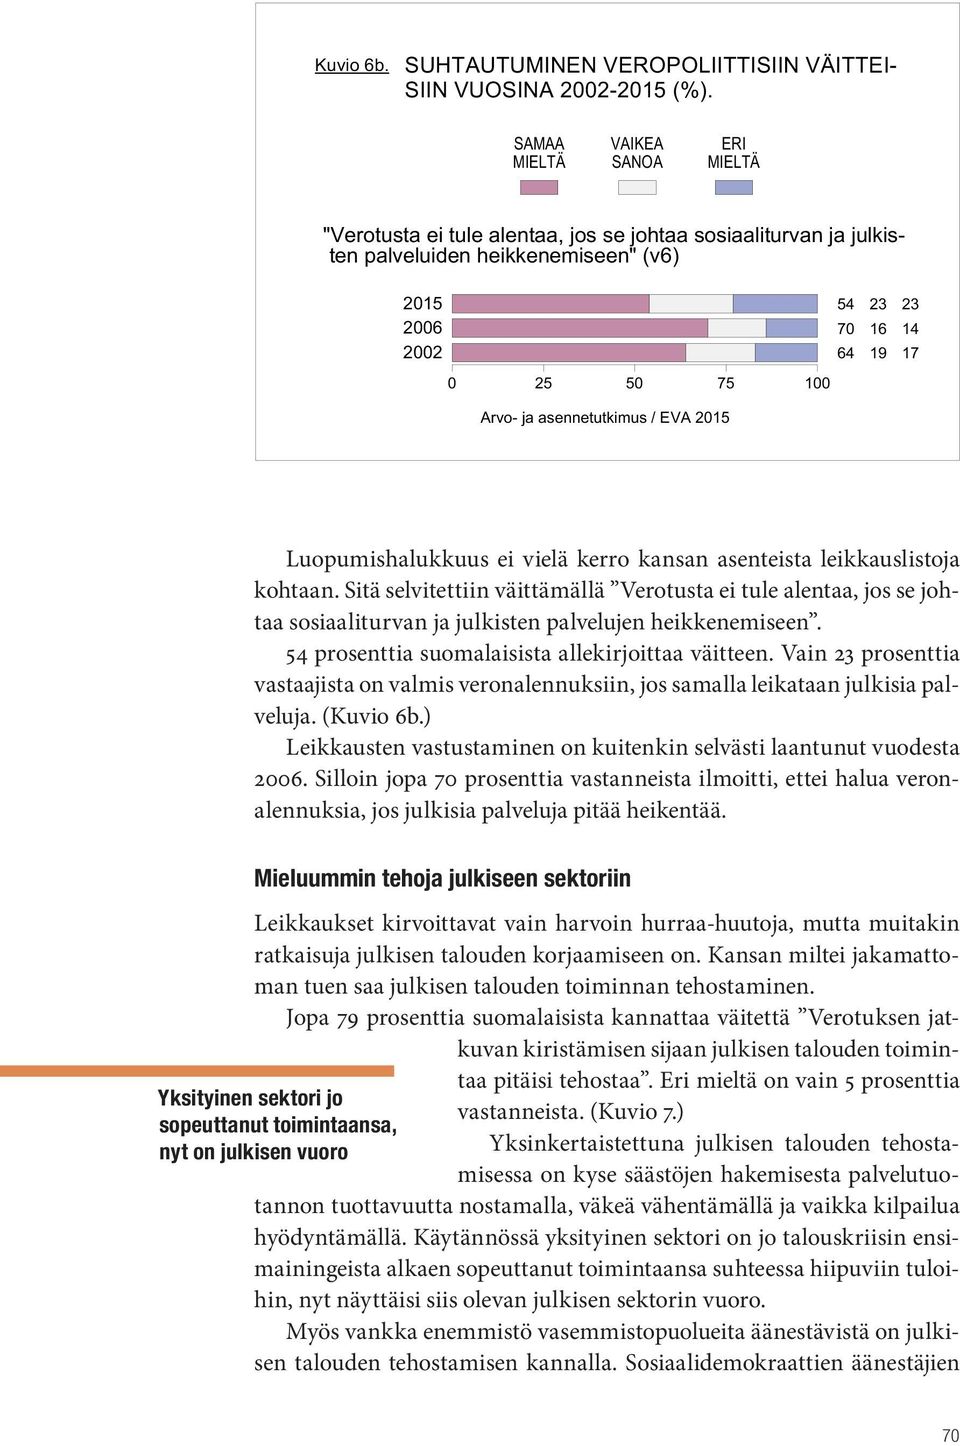 Sitä selvitettiin väittämällä Verotusta ei tule alentaa, jos se johtaa sosiaaliturvan ja julkisten palvelujen heikkenemiseen. 54 prosenttia suomalaisista allekirjoittaa väitteen.